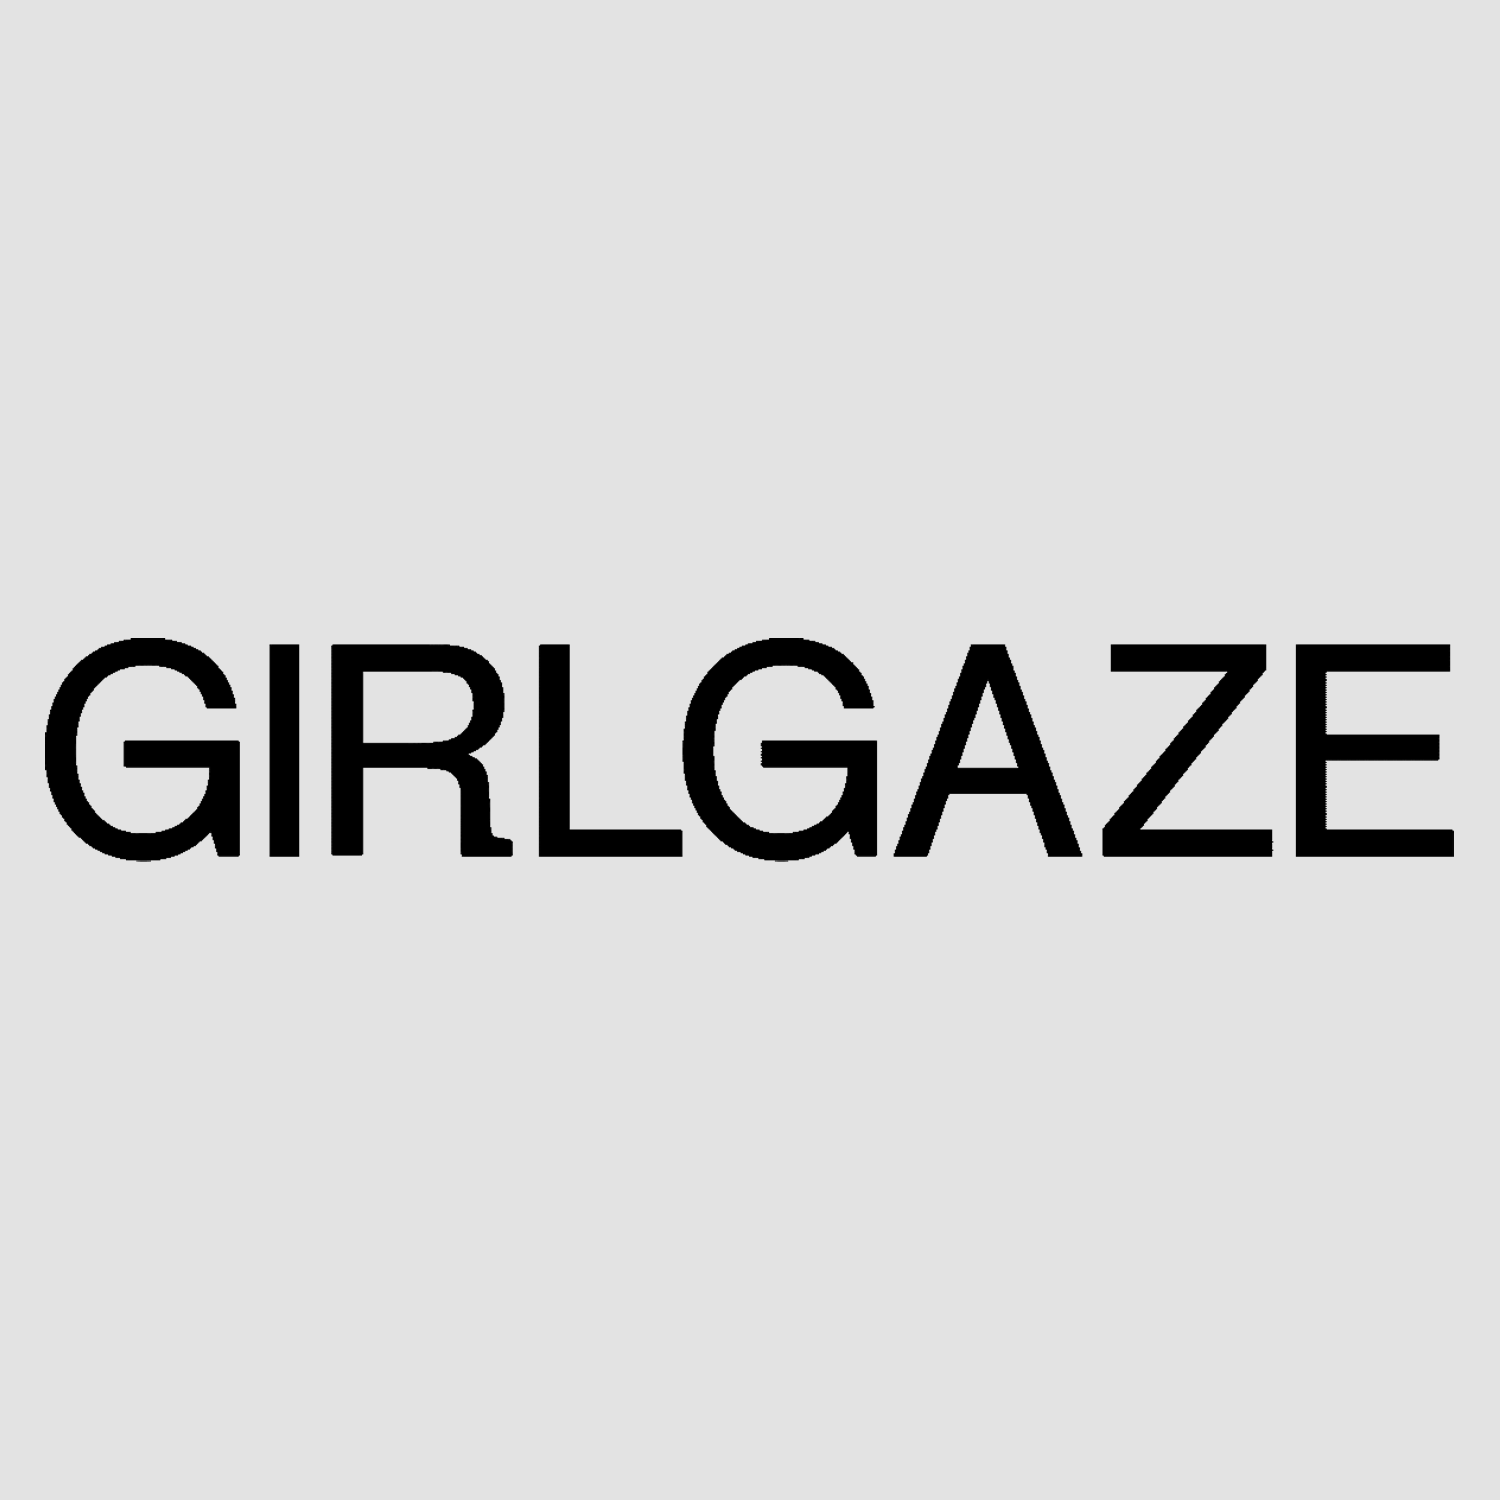 Girlgaze.png